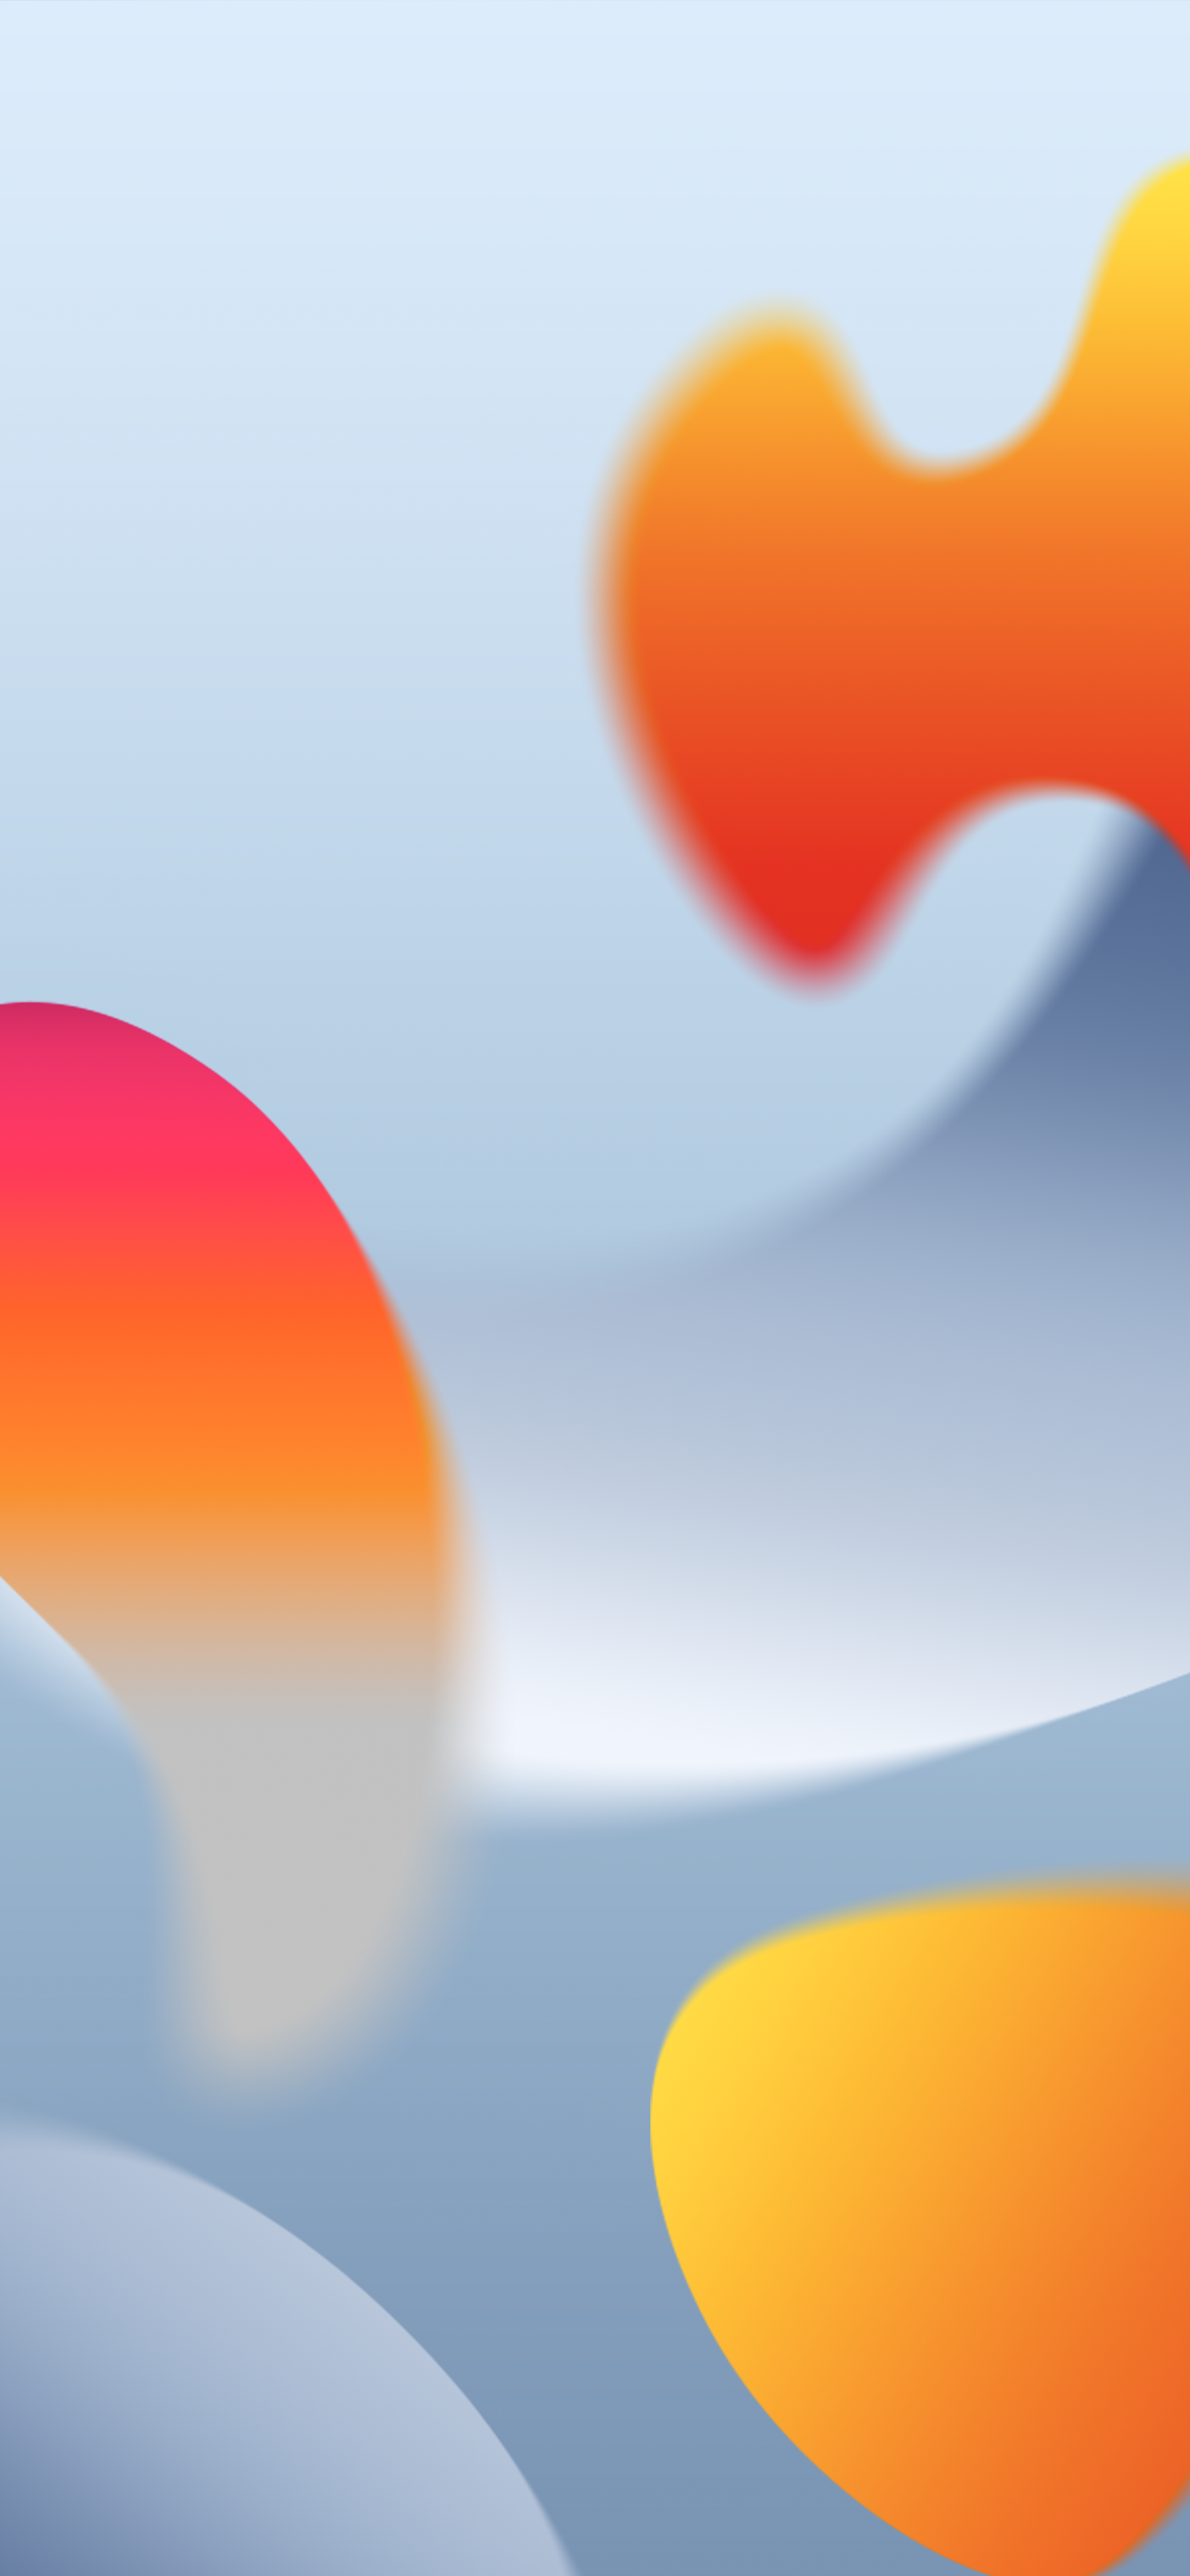 Thưởng thức hình nền trừu tượng của iPhone 14 Pro trên hệ điều hành iOS 16 với độ phân giải 4K thật tuyệt vời. Với màu sắc cam và xám tương phản, hình nền này sẽ làm bạn phải say mê ngay từ cái nhìn đầu tiên. Hãy xem hình để thưởng thức nó thôi nào. 